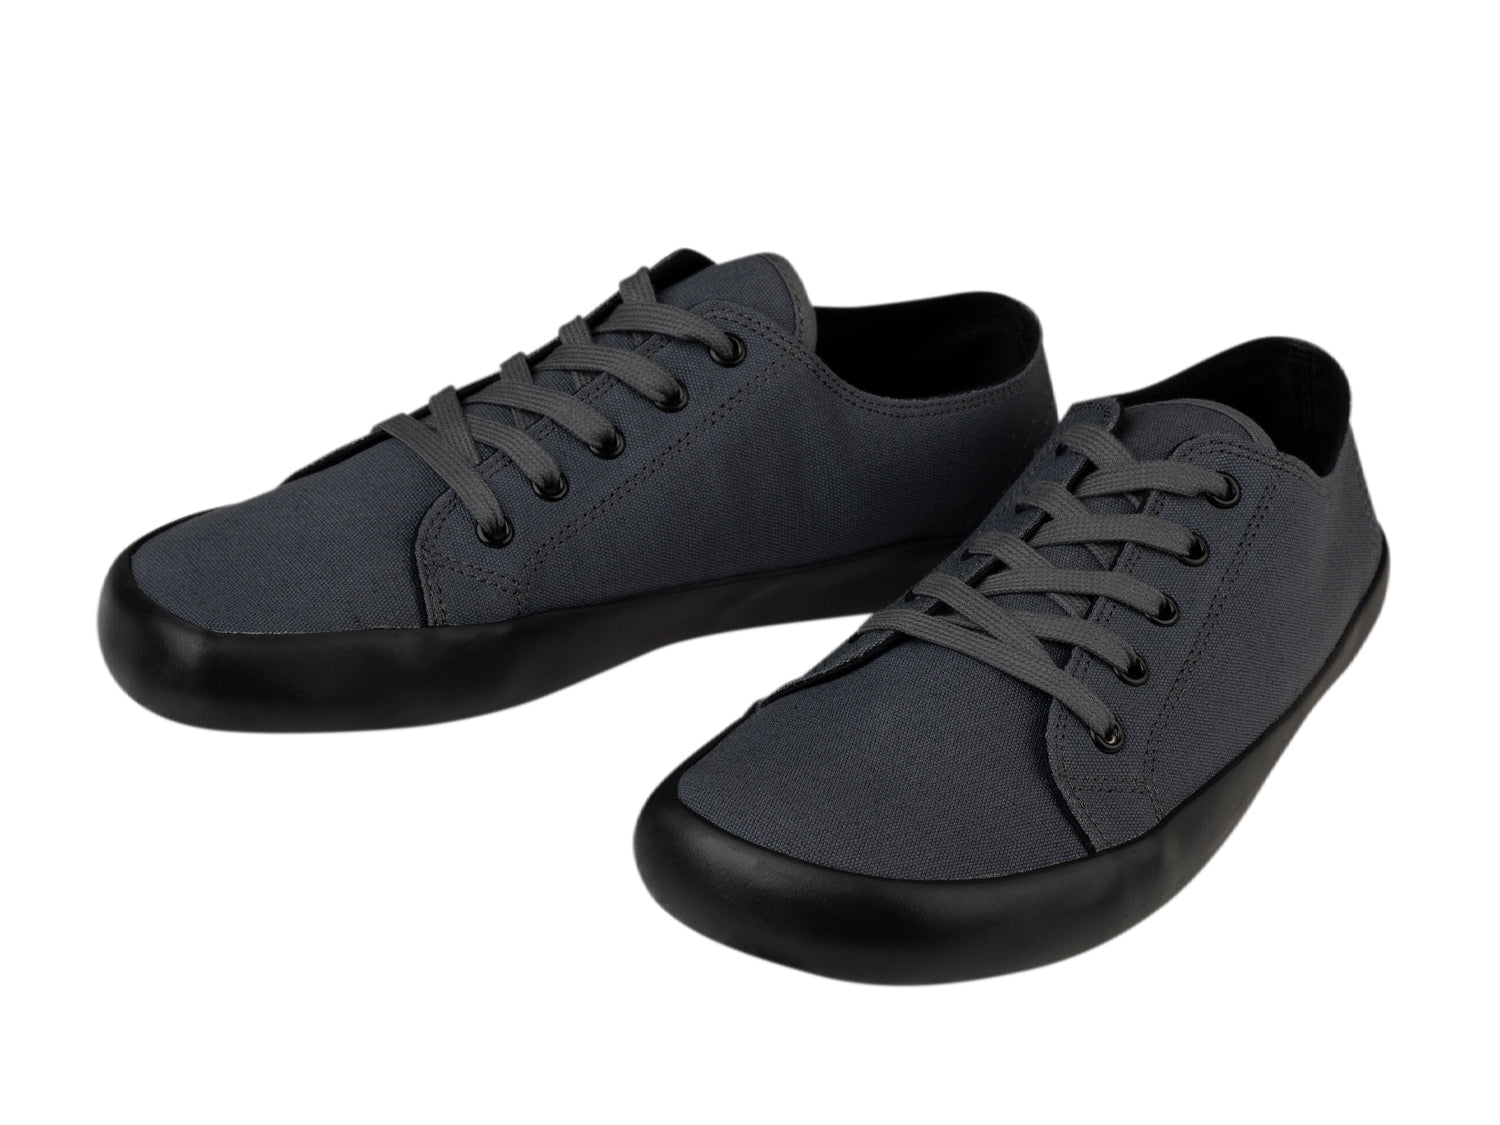 Bohempia Hoska 2.0 barfods sneaker til kvinder og mænd i farven dark gray-black, par